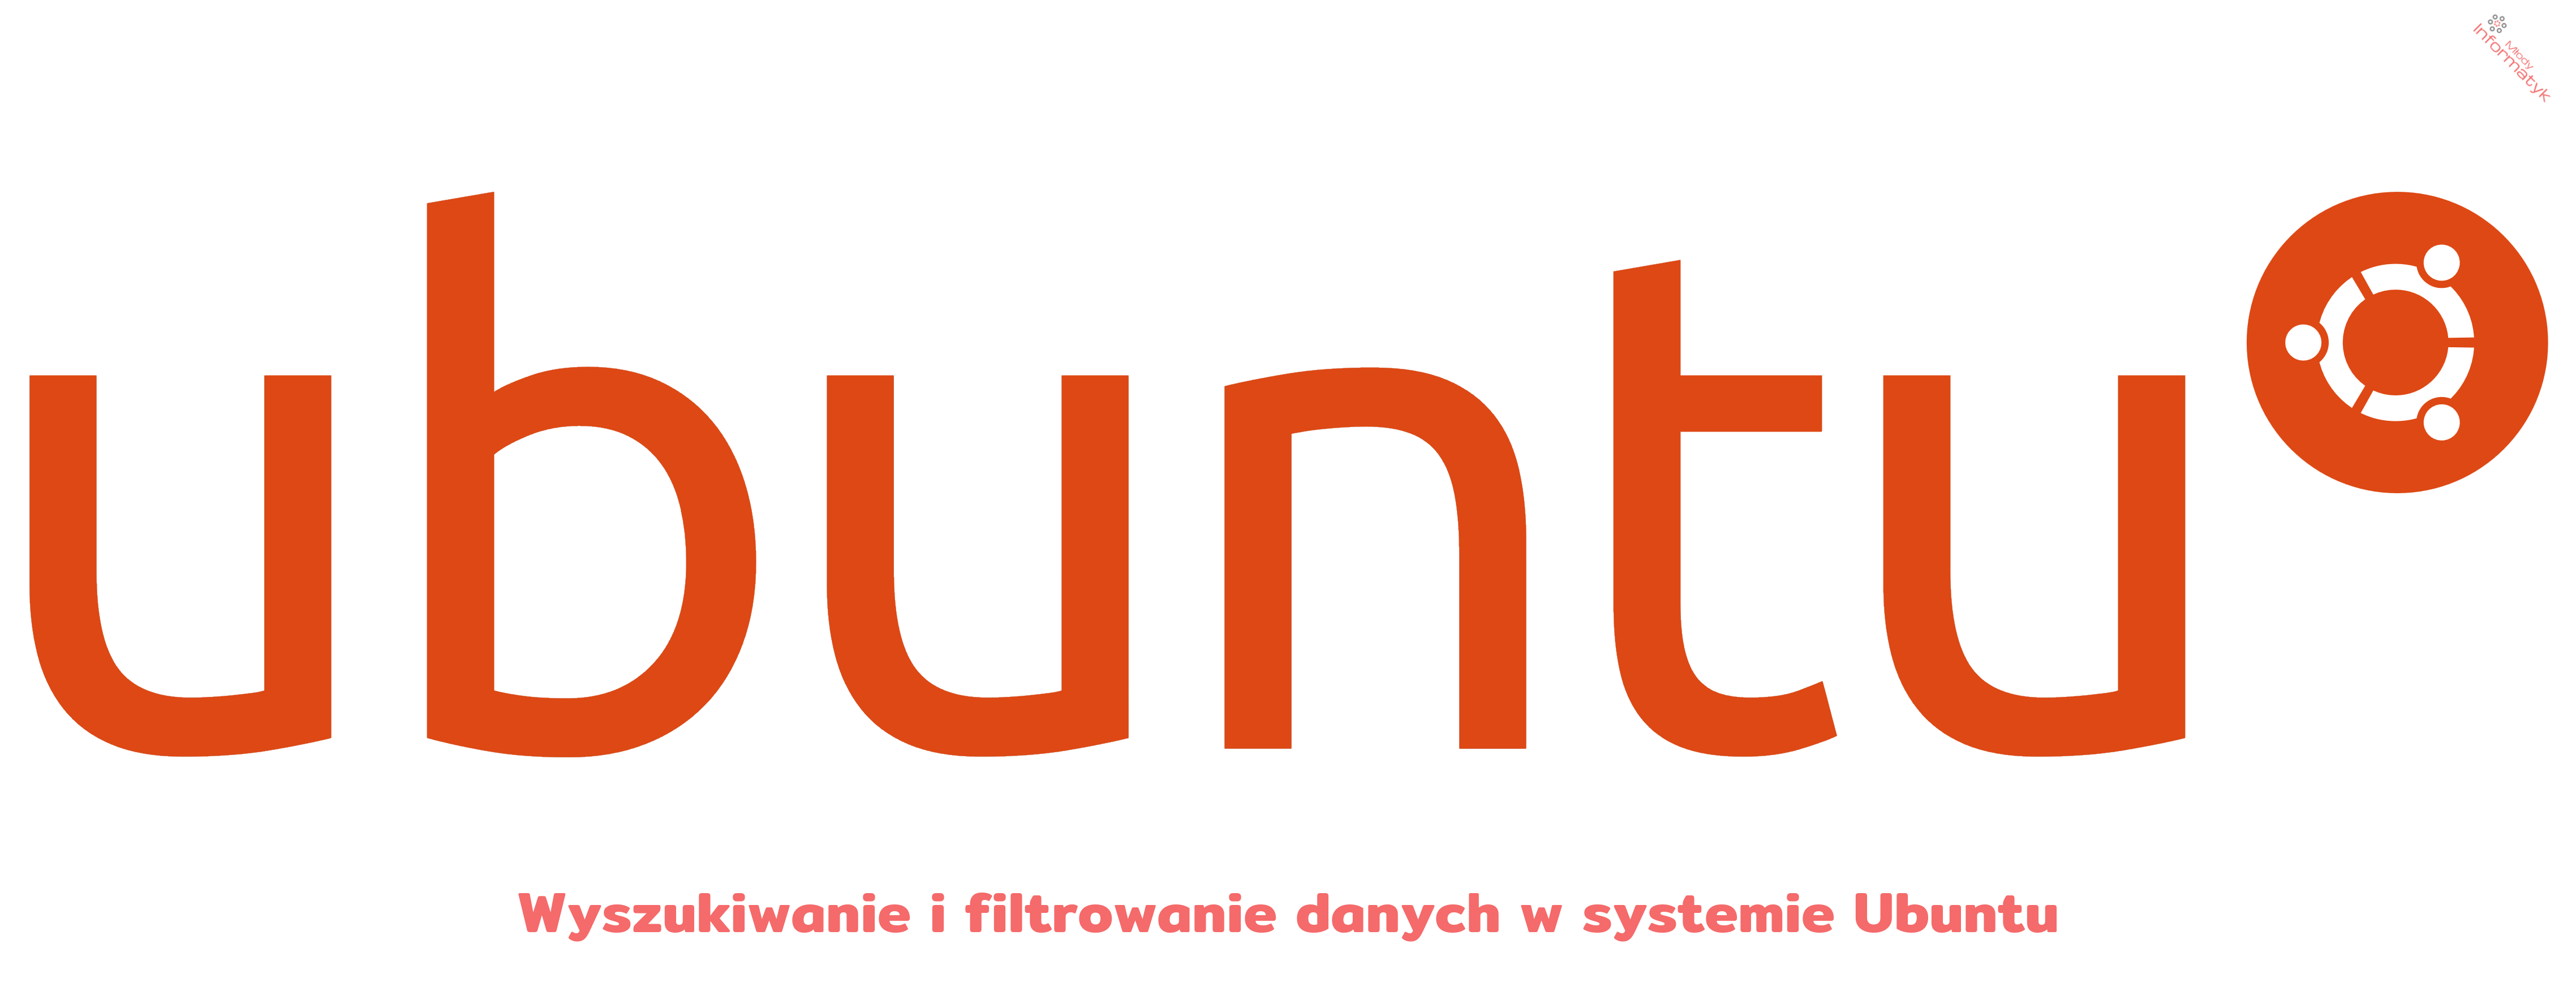 Wyszukiwanie i filtrowanie danych w systemie Ubuntu